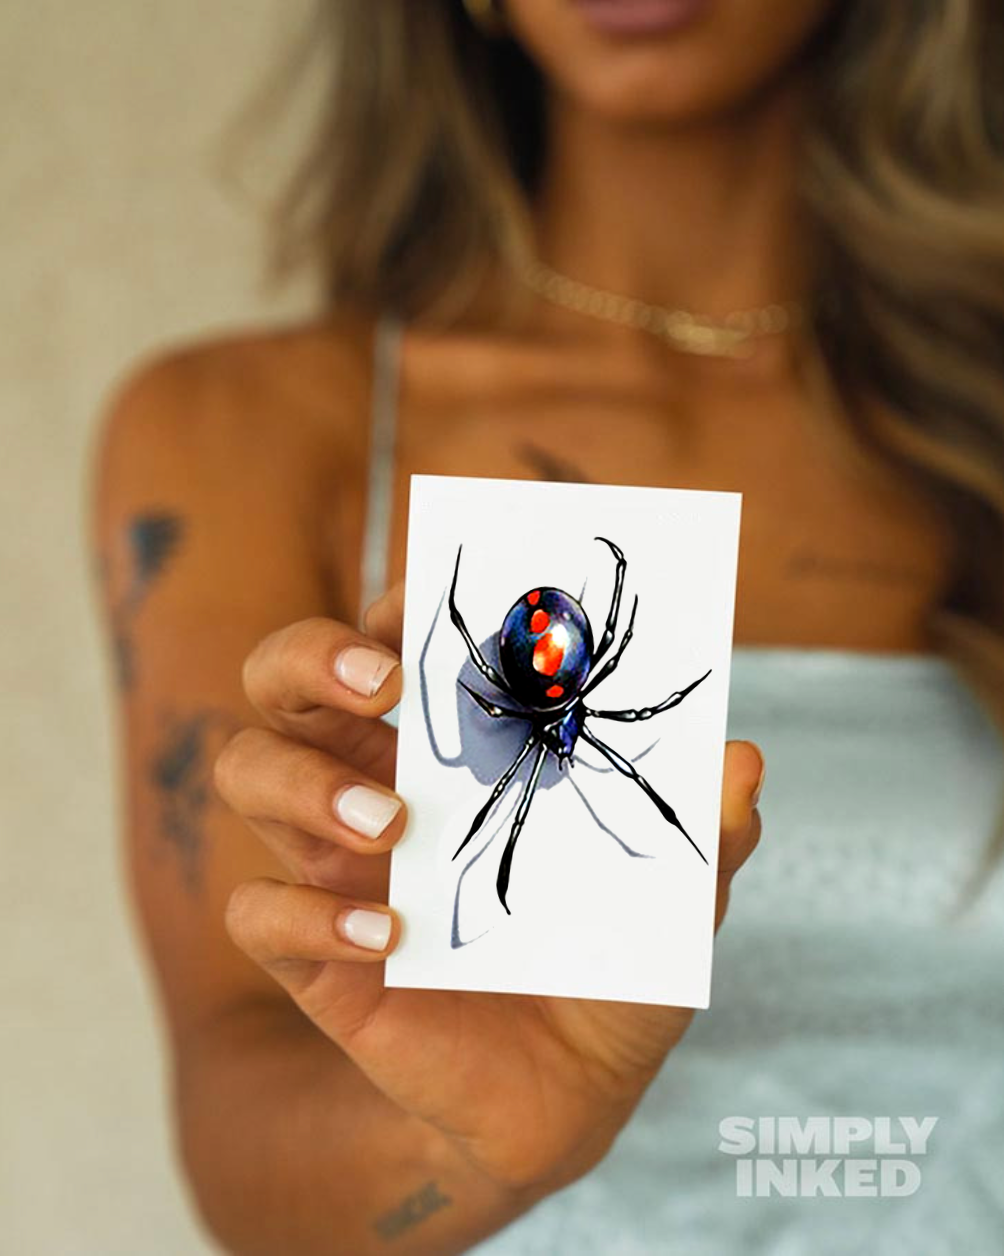 Spider - 3D Tattoo